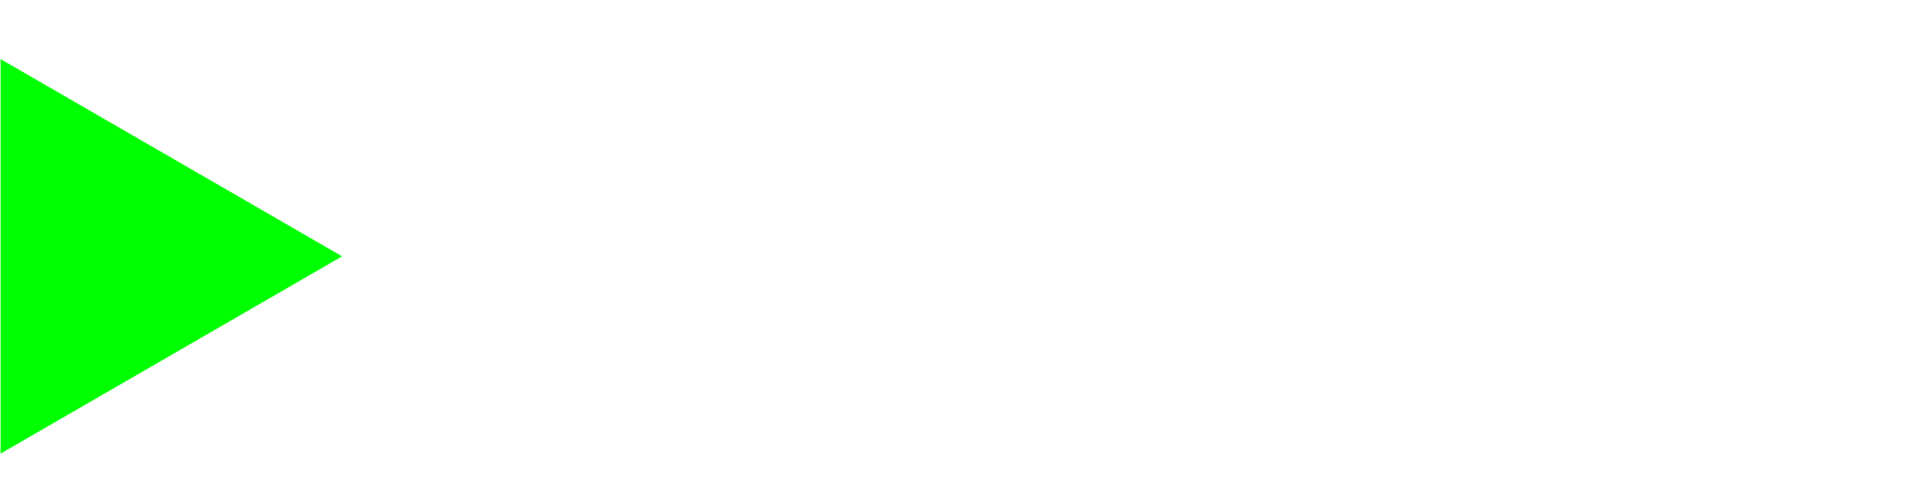 BACE Monitor Surveying